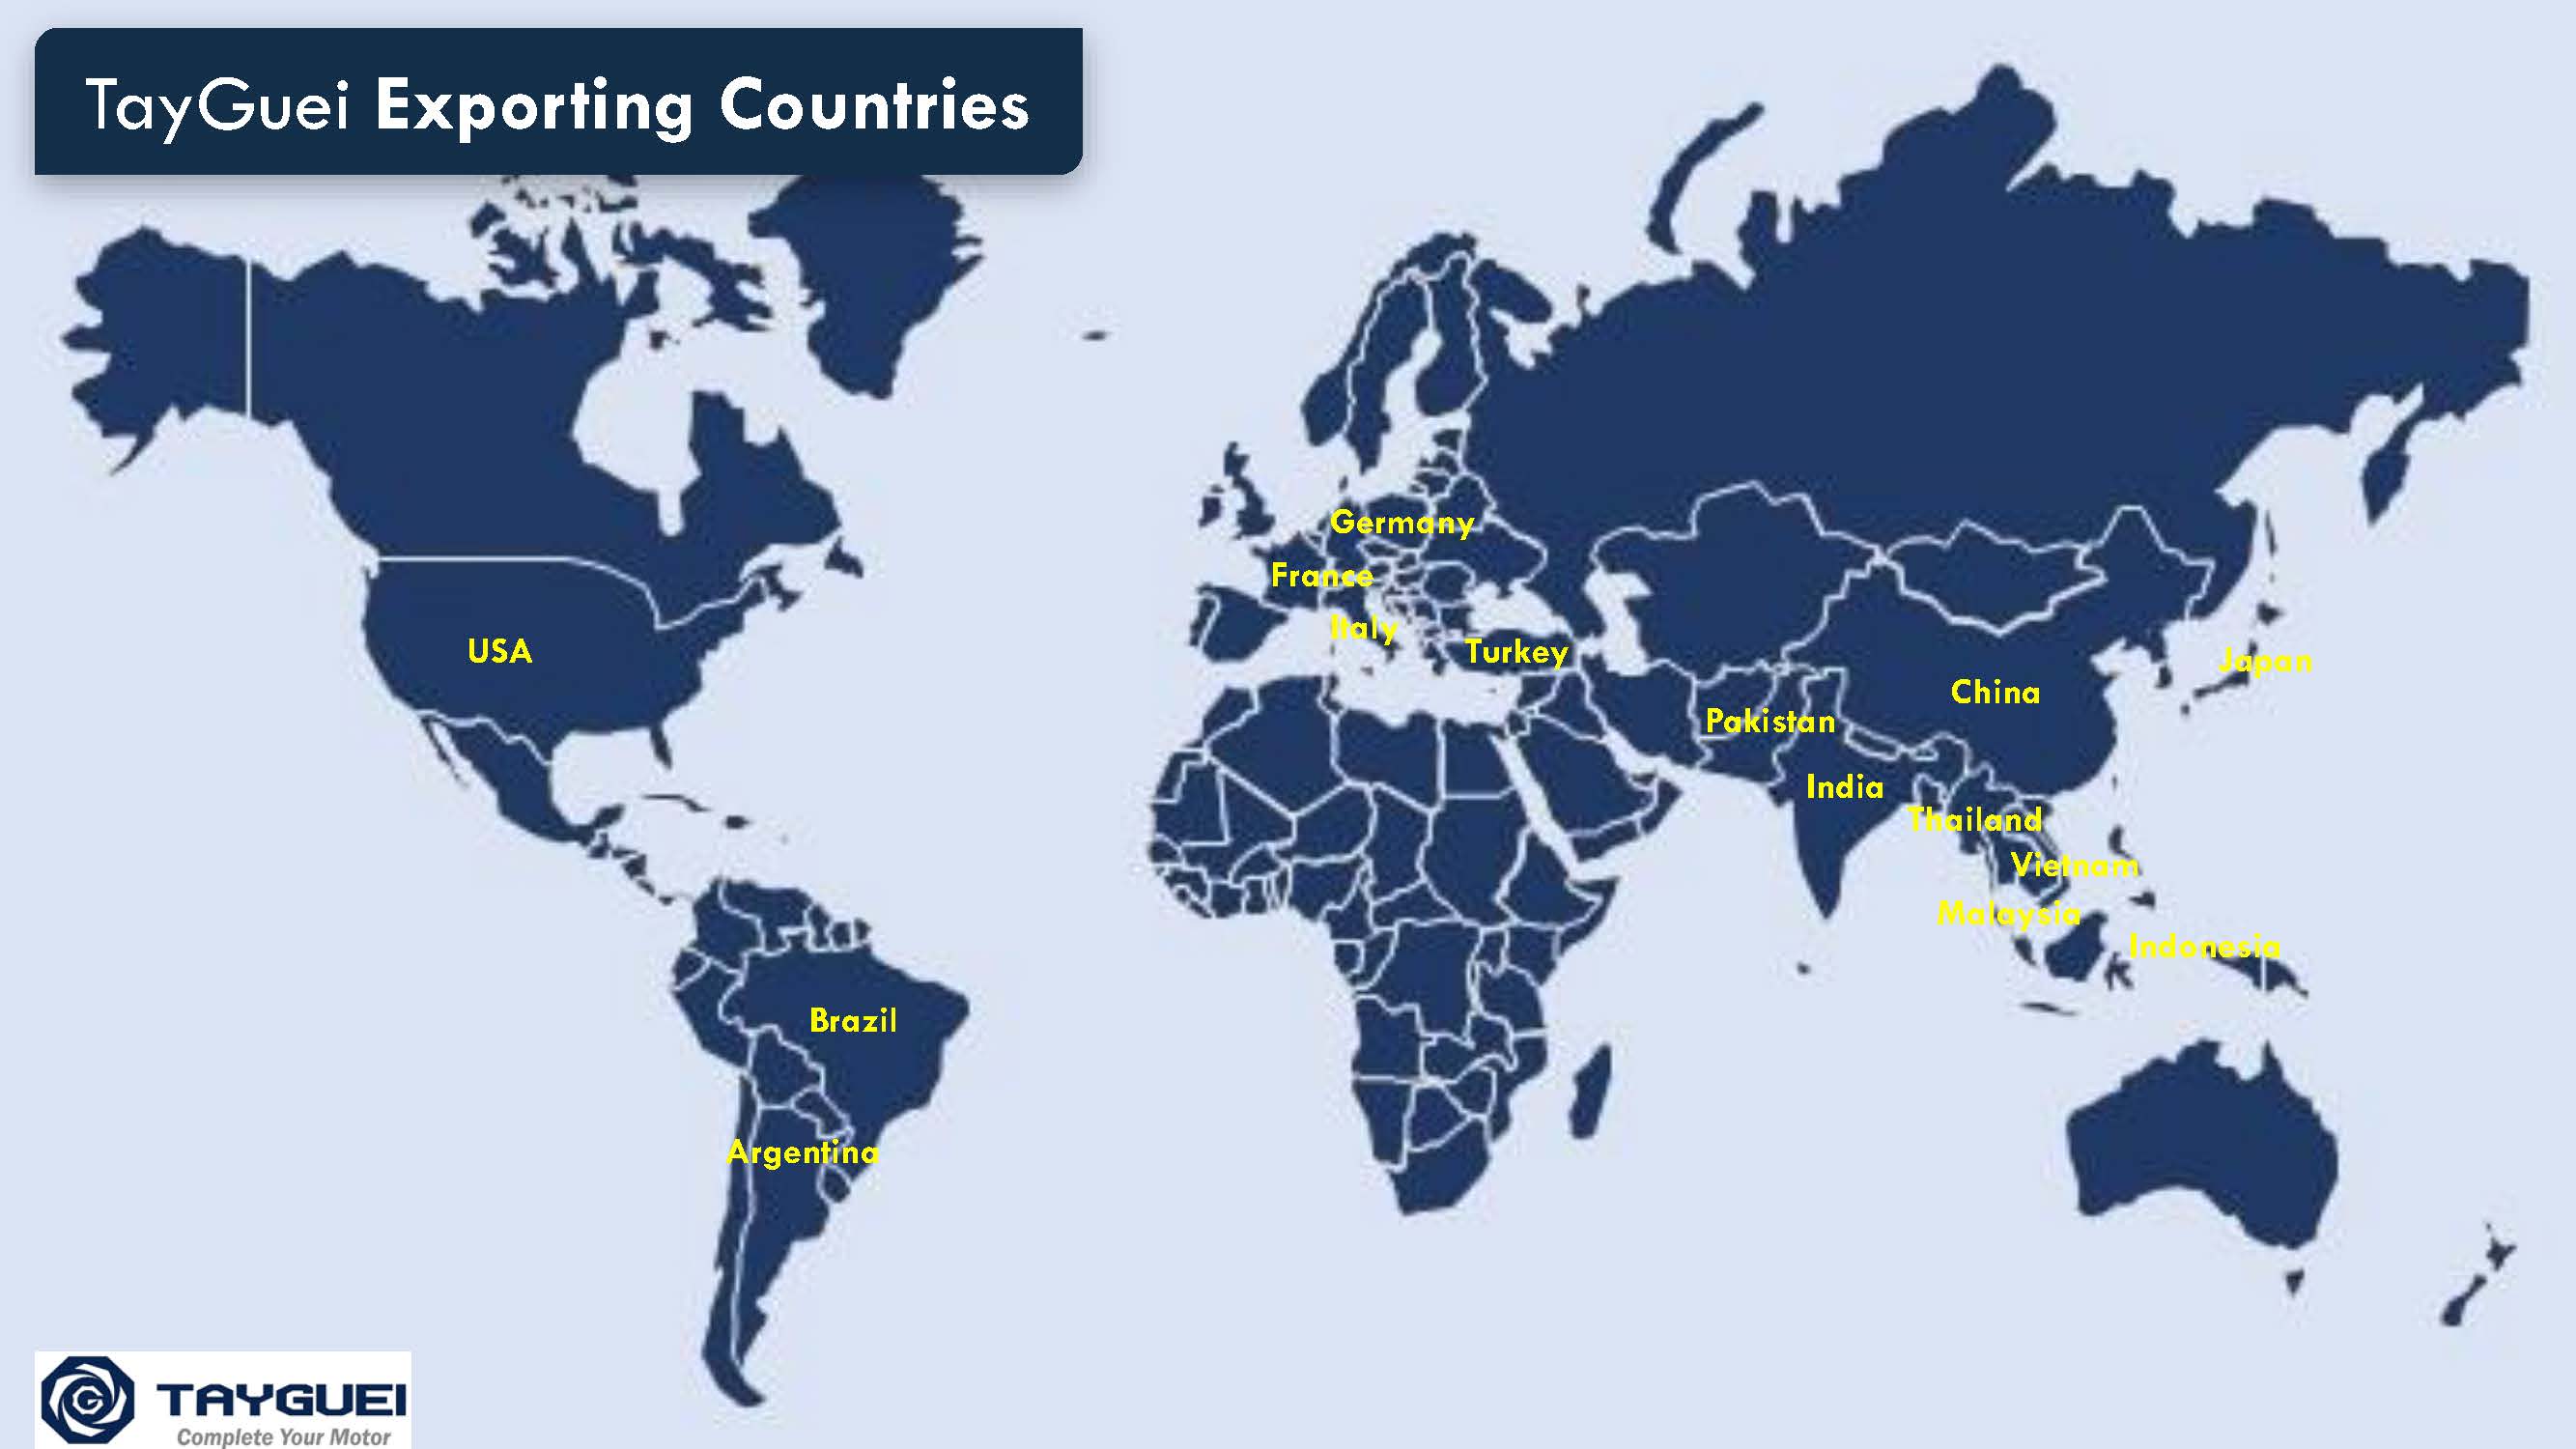 Produkty jsou exportovány do více než 15 zemí po celém světě.